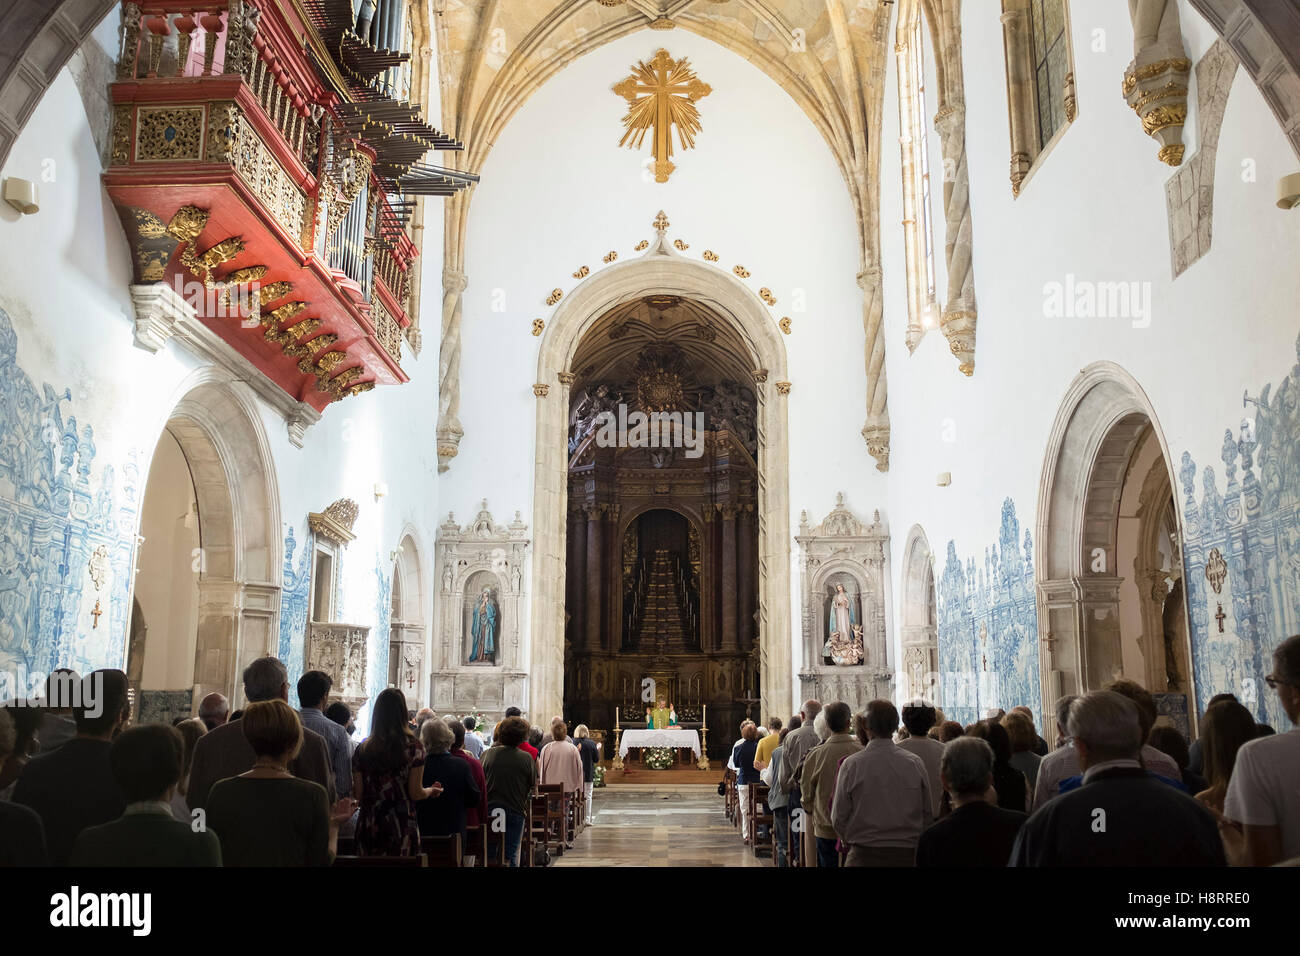 Innenansicht der Igreja de Santa Cruz Kirche in Coimbra, Portugal, während der Messe Stockfoto